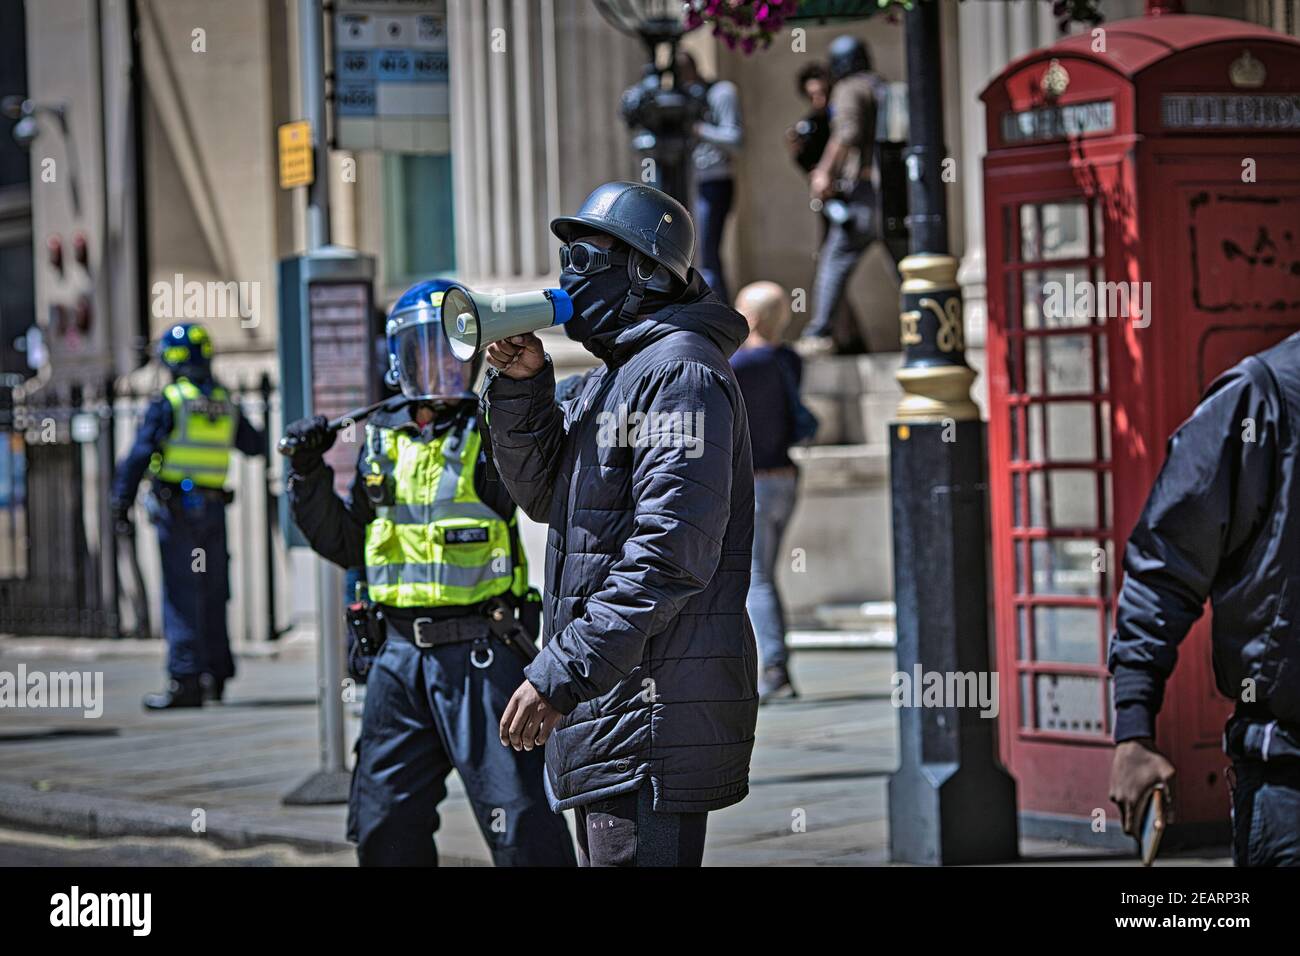 Londres 13 juin 2020 des manifestants de BLM affrontaient des groupes d'extrême droite et des policiers à Trafalgar Square Banque D'Images